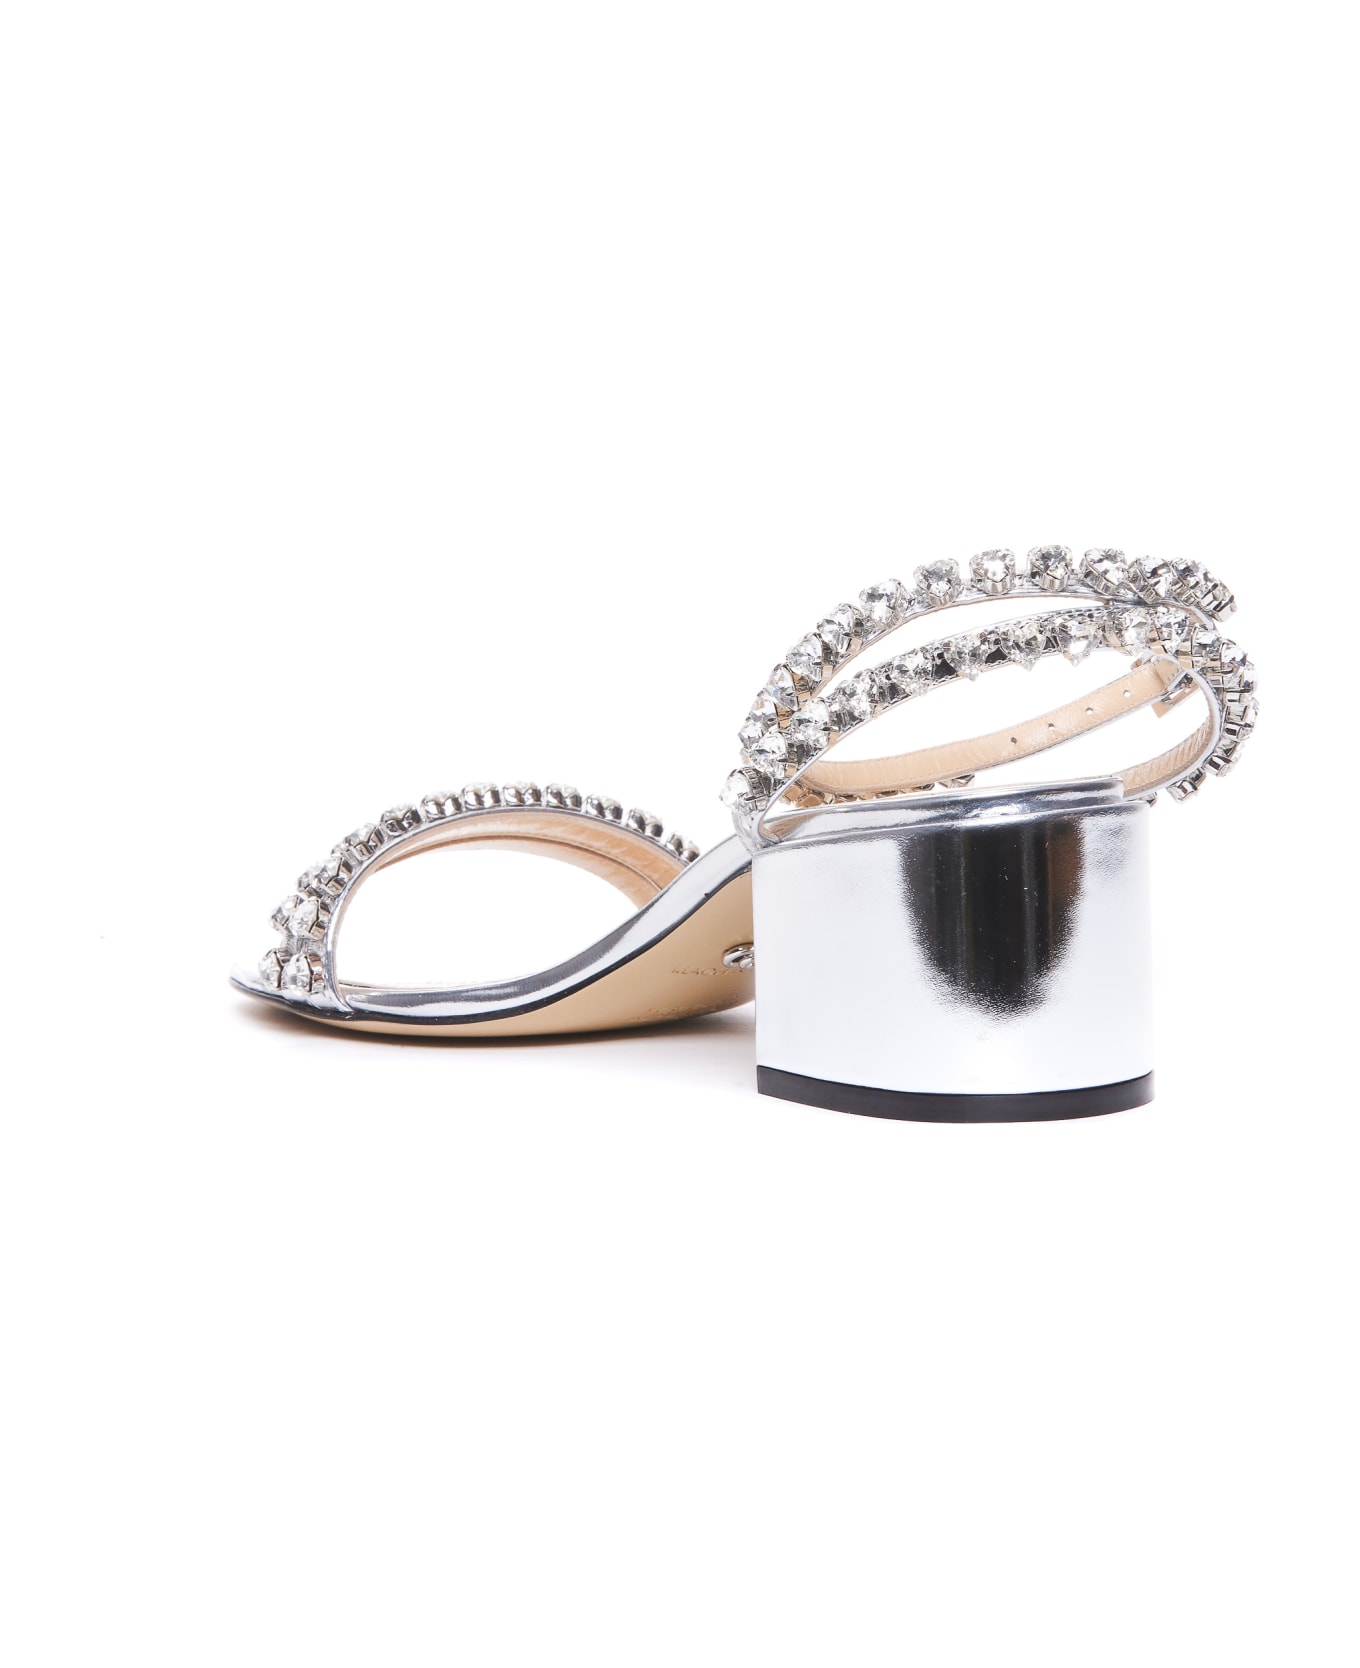 Mach & Mach Audrey Crystal Pump Sandals - Silver サンダル